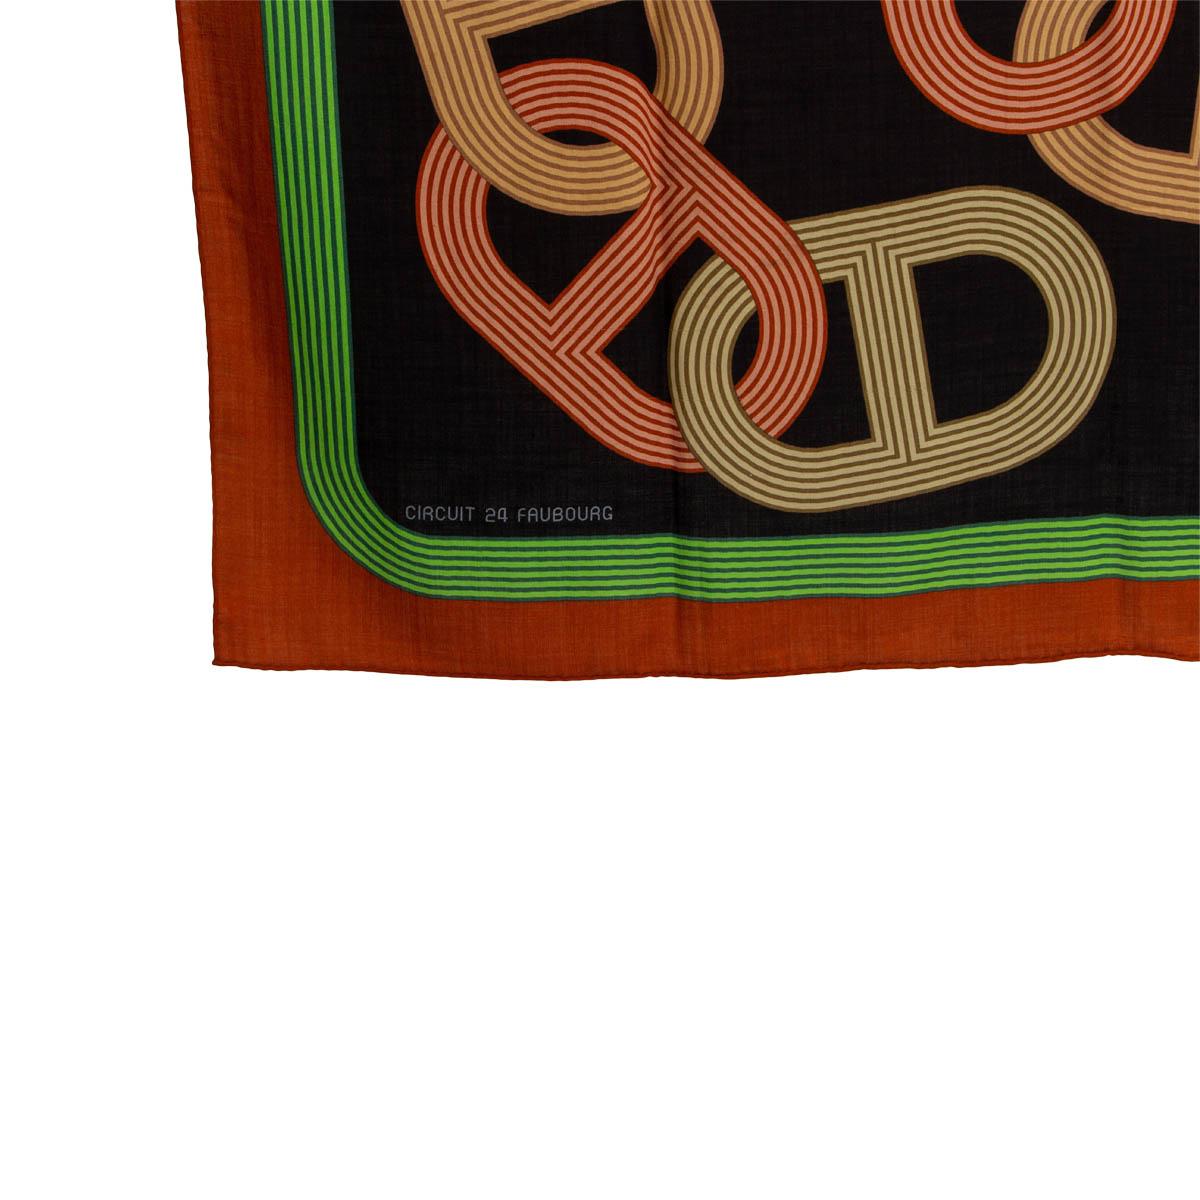 100% authentischer Hermès Circuit 24 Faubourg 140' Schal von Benoit Pierre Emery aus schwarzem Kaschmir (65%) und Seide (35%) mit ziegelfarbener und grüner Bordüre und Details in Gelb, Beige, Braun und Olivgrün. Wurde mit einigen Fadenziehungen